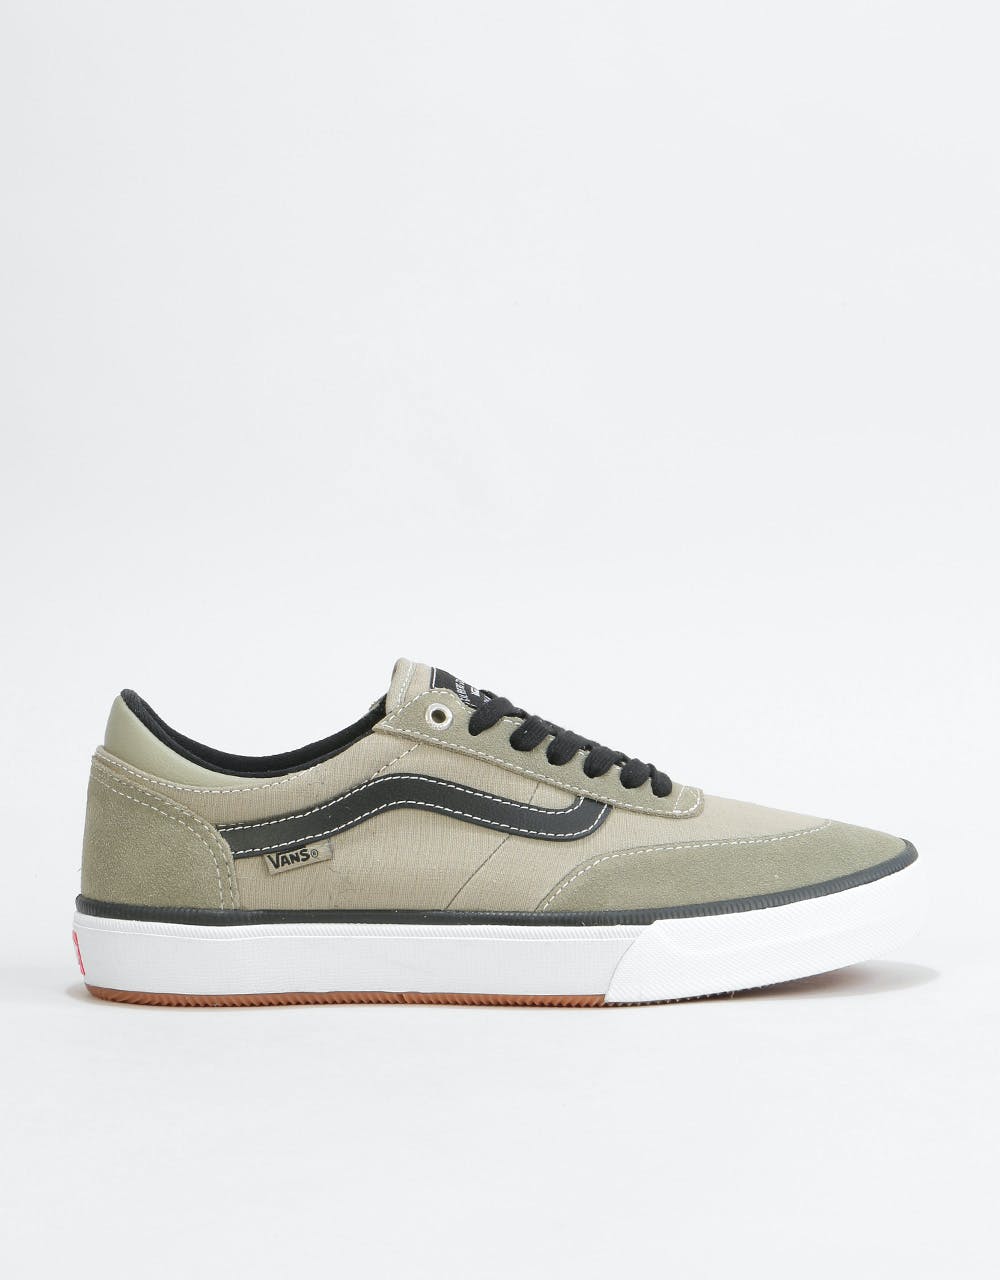 Vans Gilbert Crockett 2 Pro Skate Shoes - (Covert) Laurel Oak/White